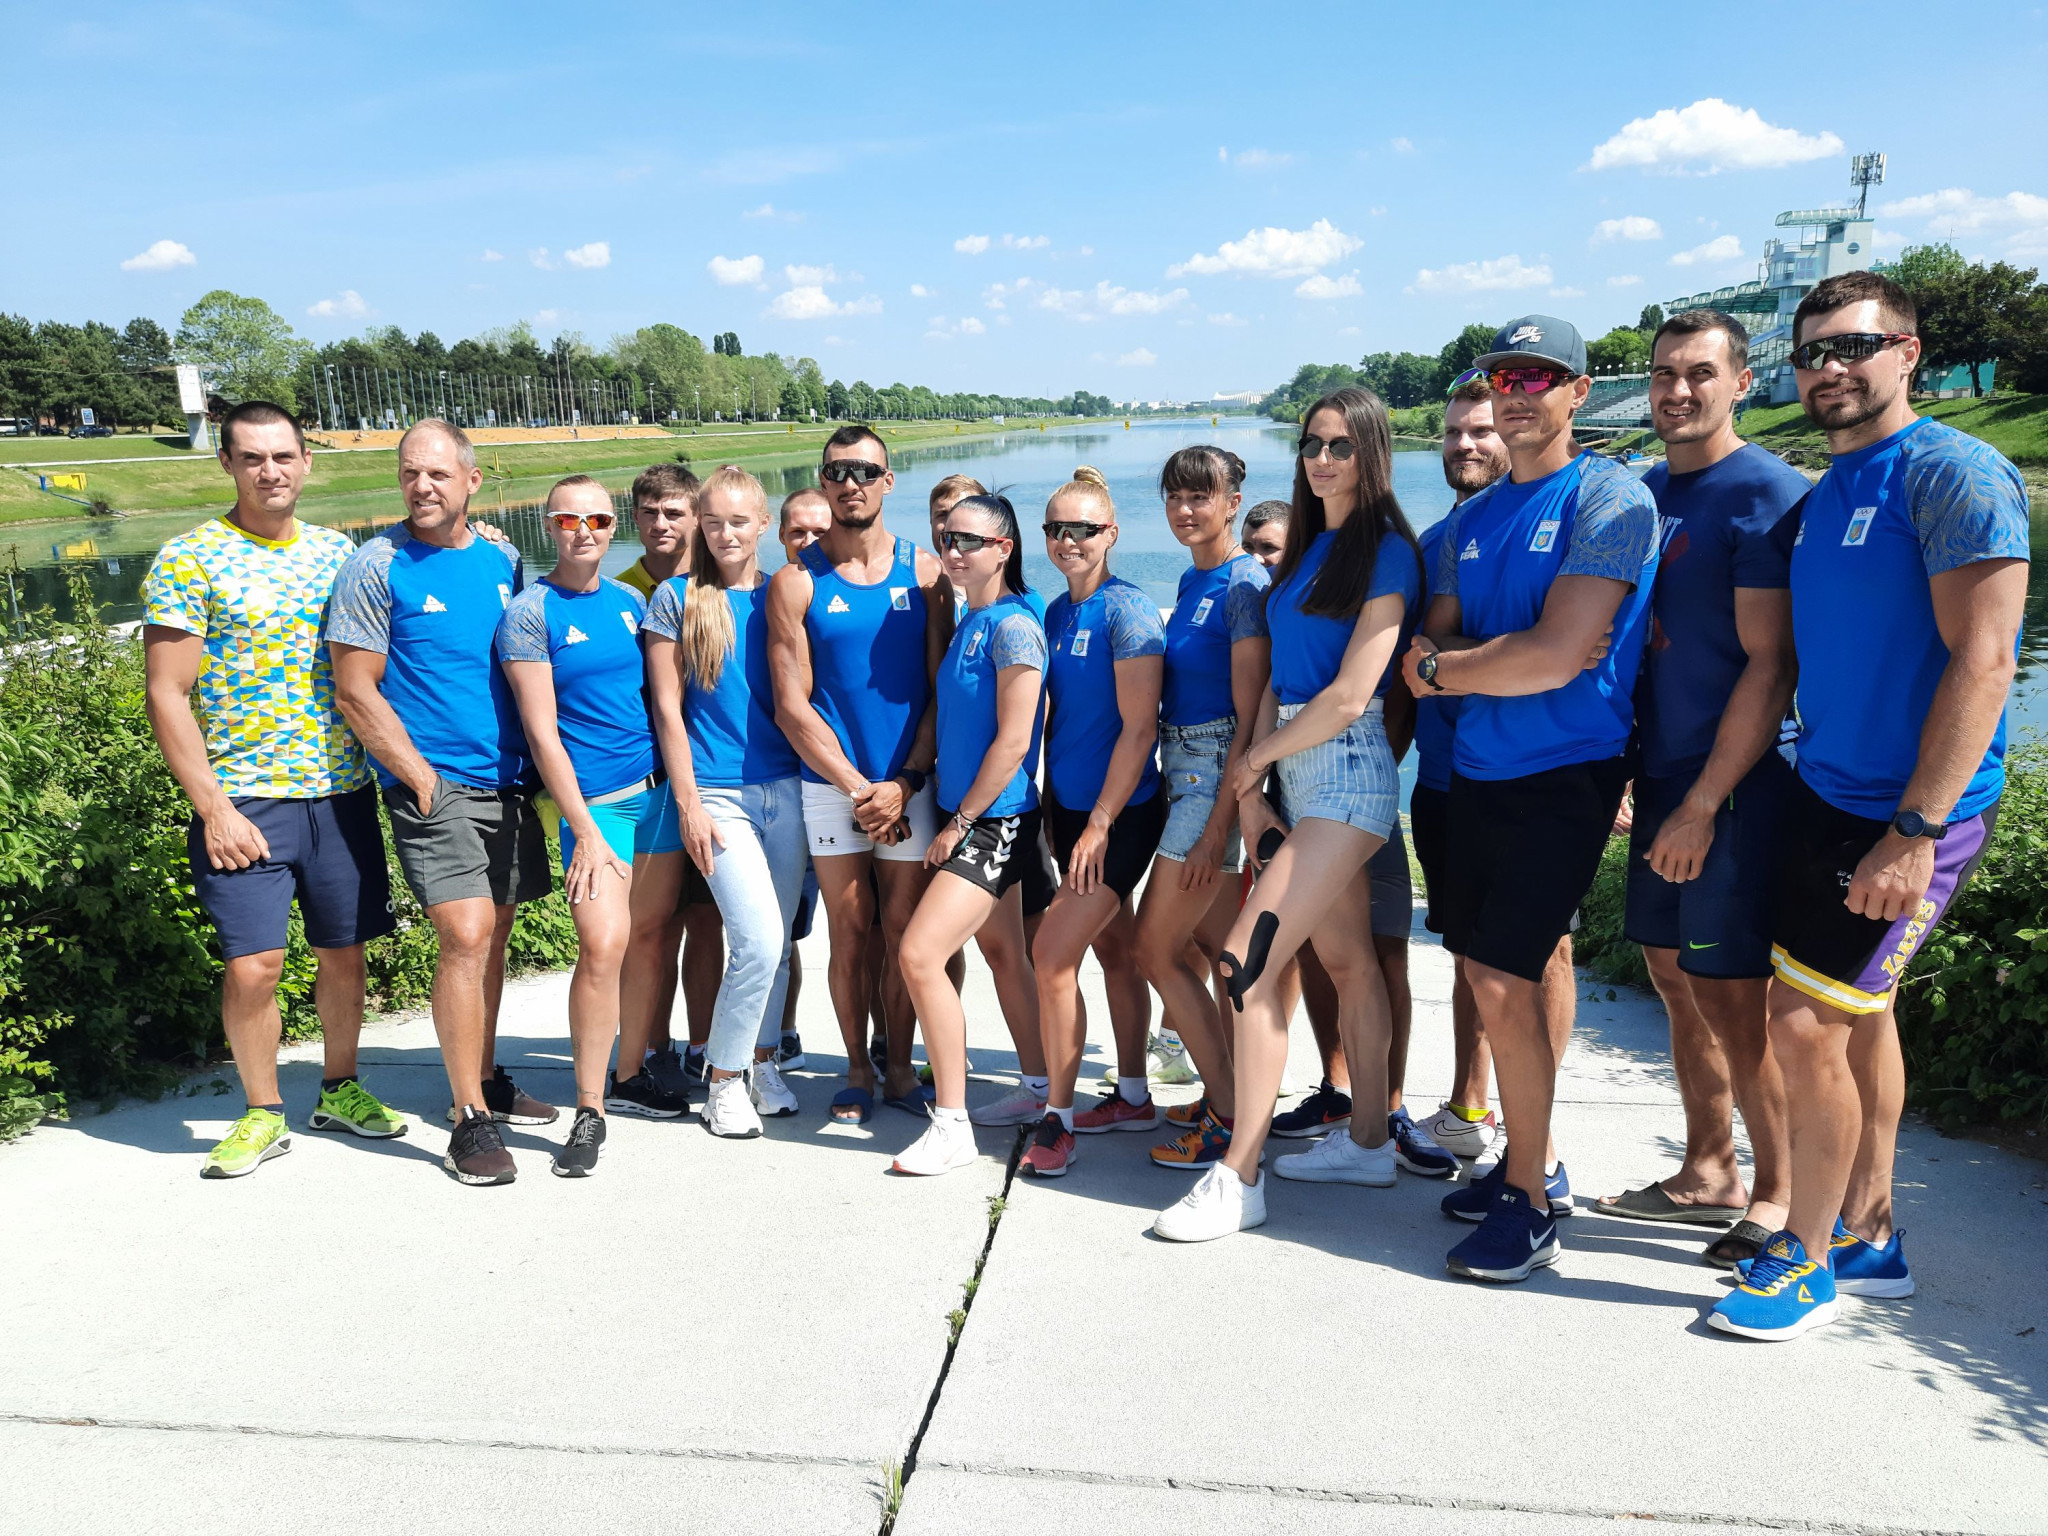 Croatia is hosting members of the Ukrainian rowing team ©Croatian Olympic Committee